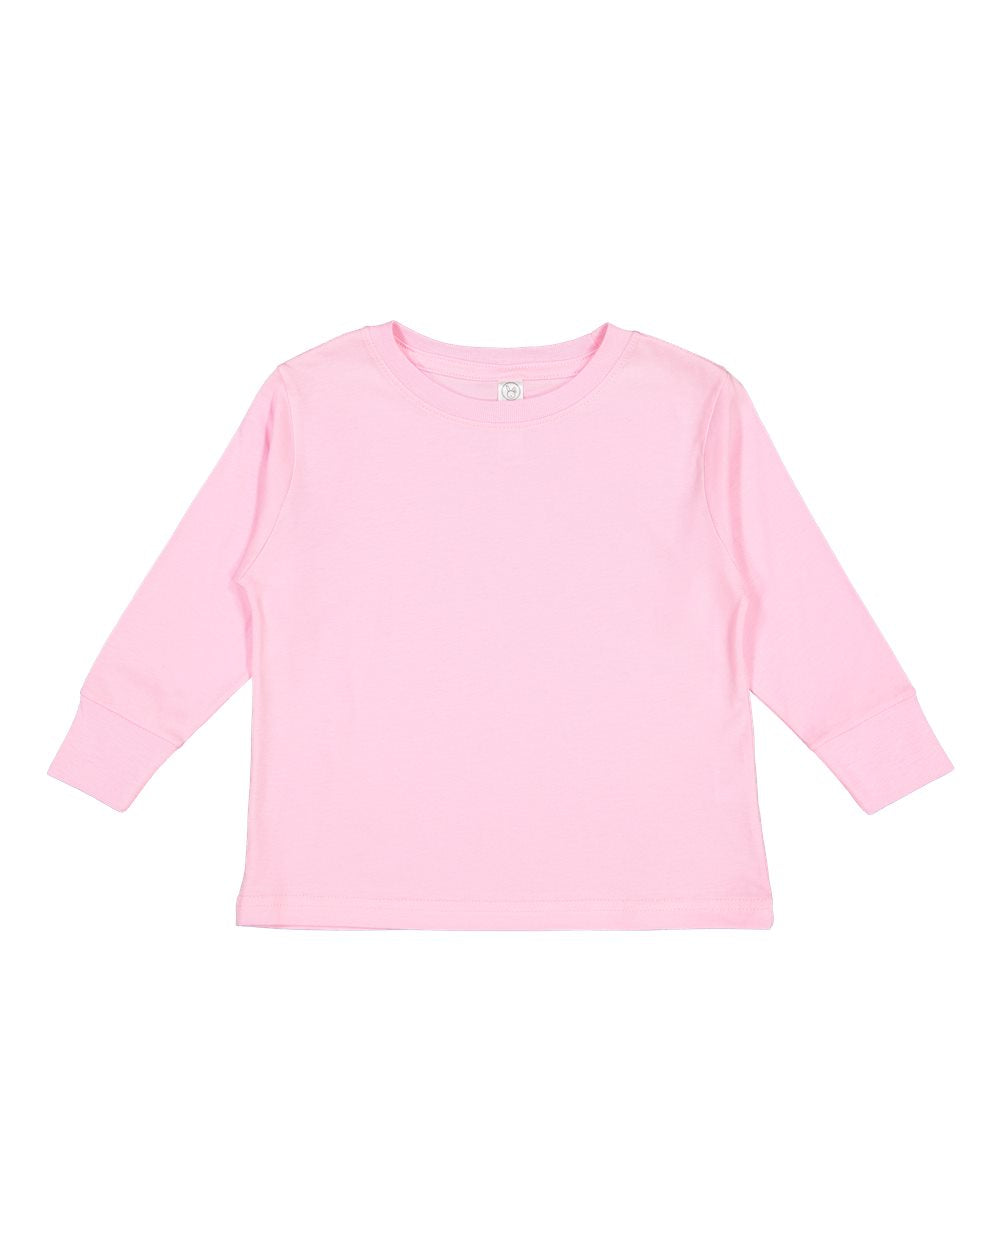 rabbit skins toddler long sleeve cotton jersey tee pink